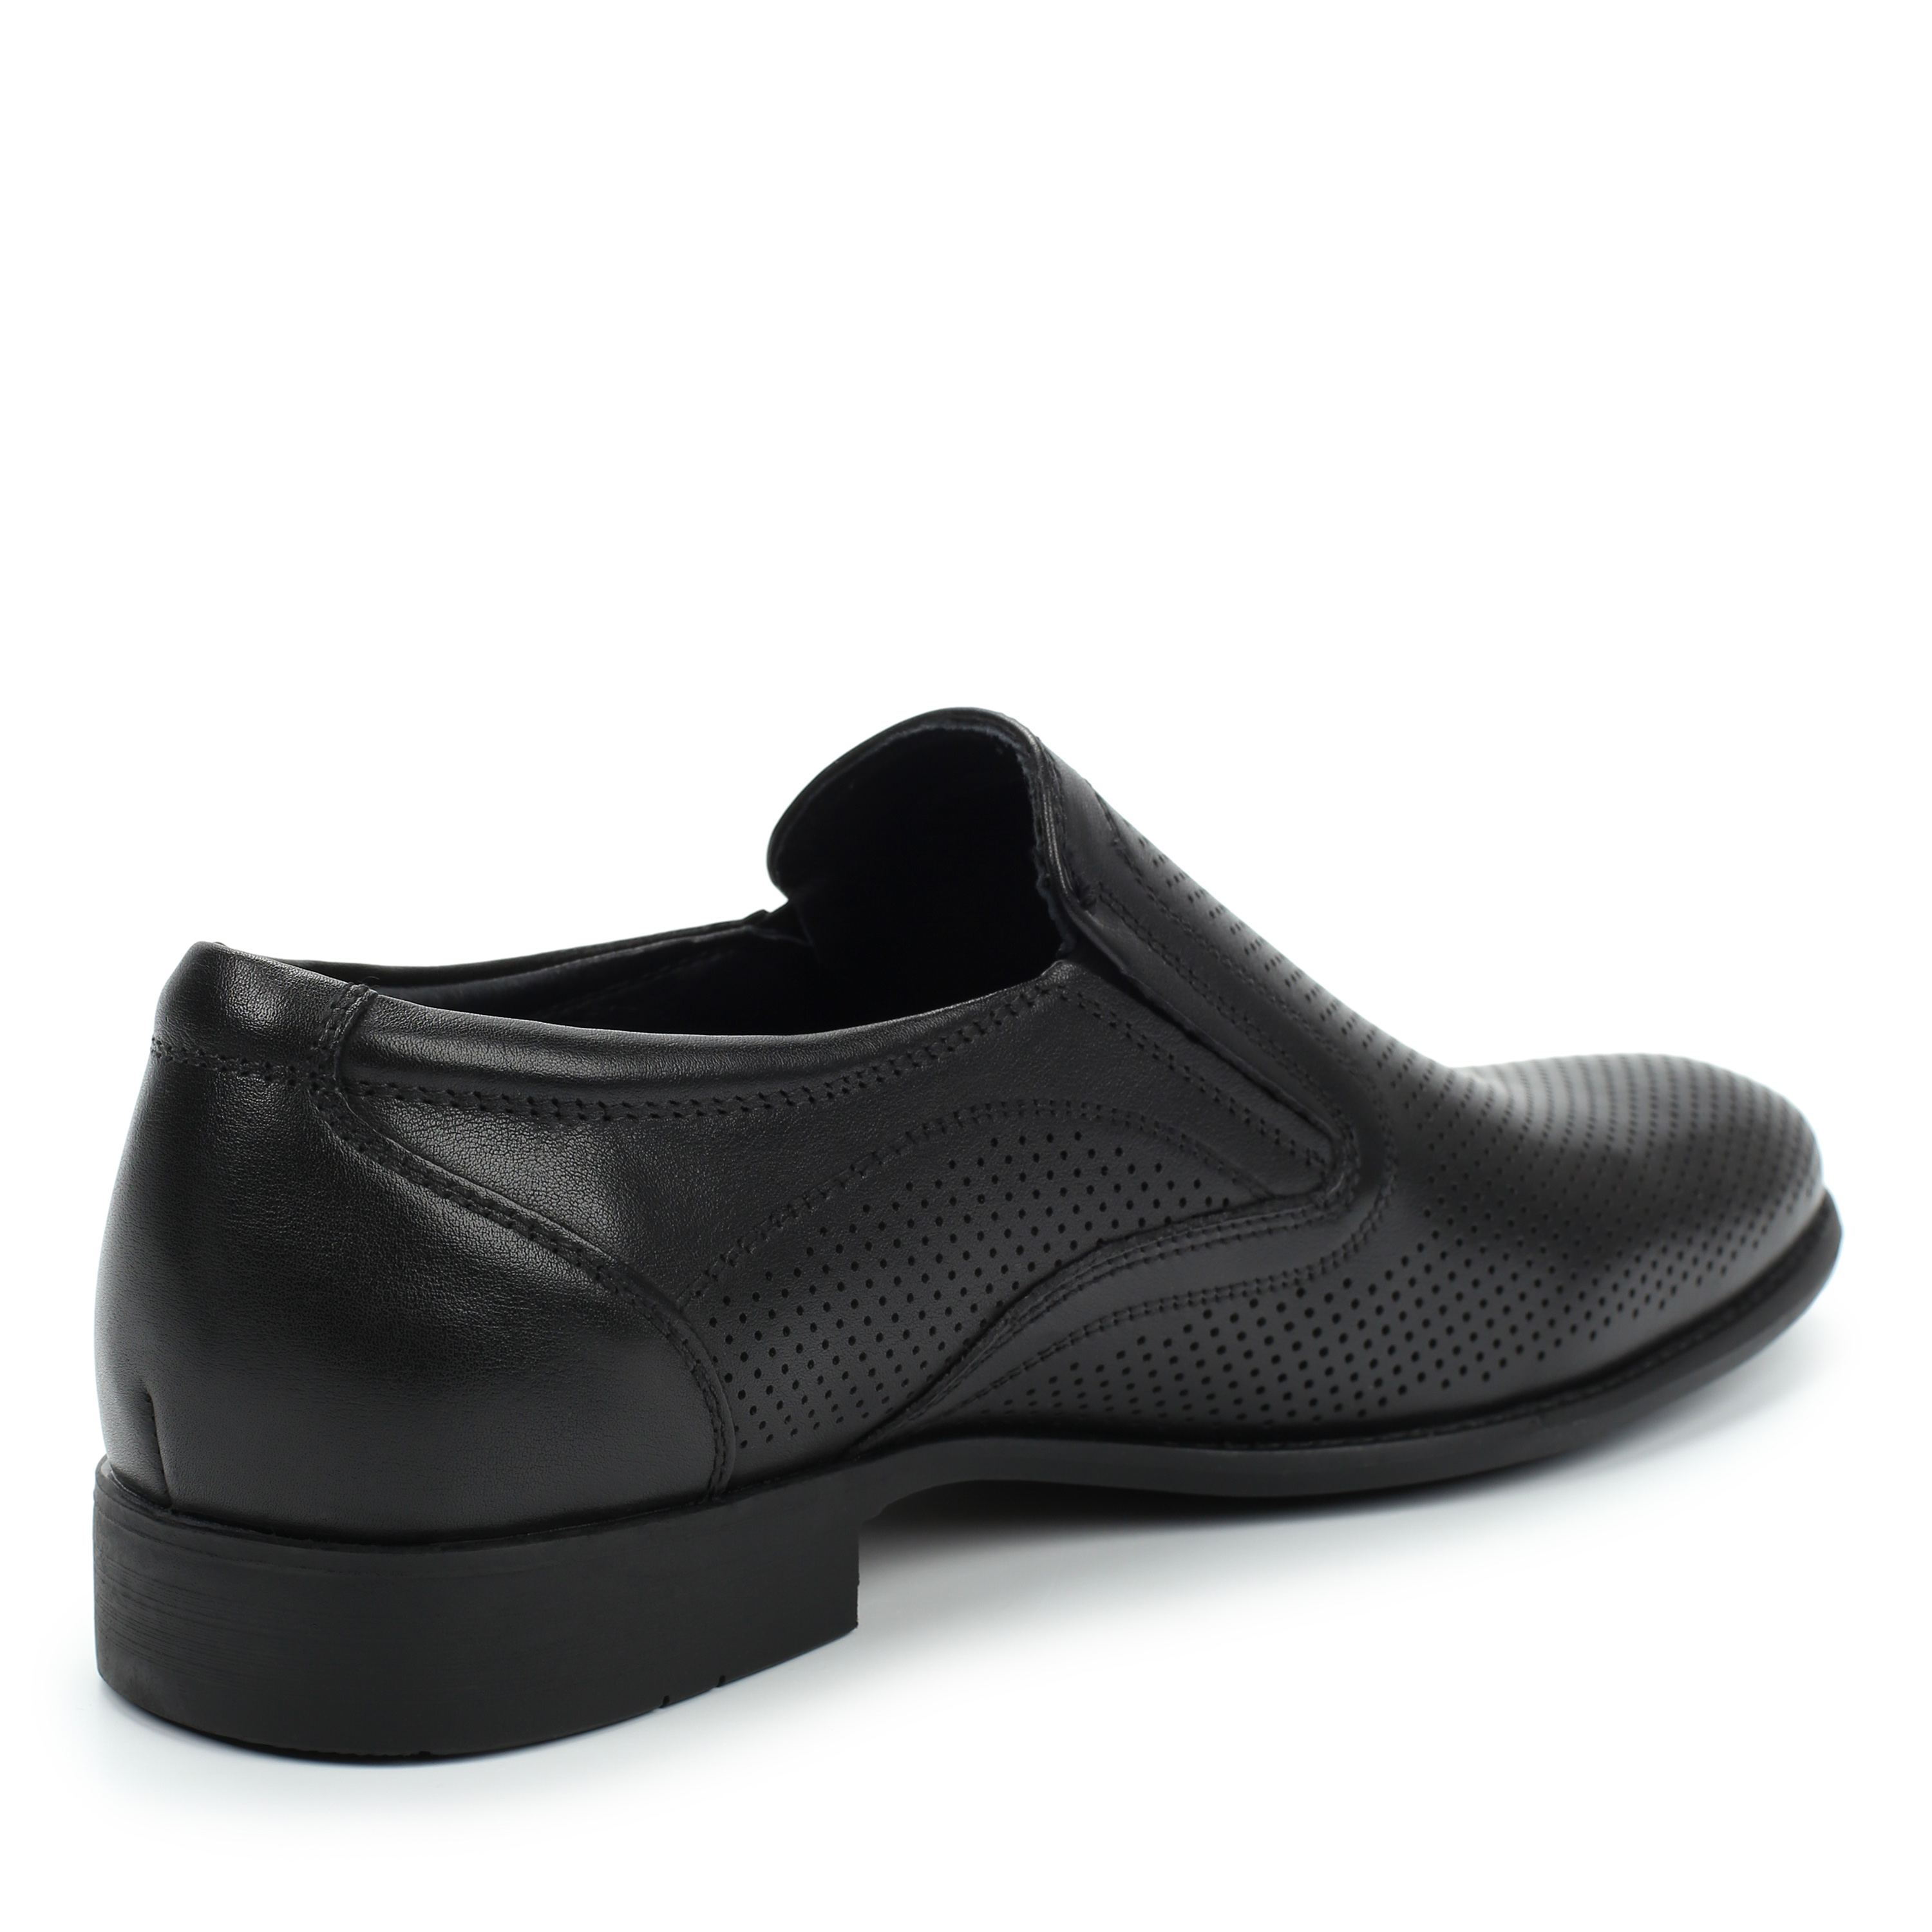 Полуботинки MUNZ Shoes 058-101B-1121 058-101B-1121, цвет черный, размер 40 туфли - фото 3